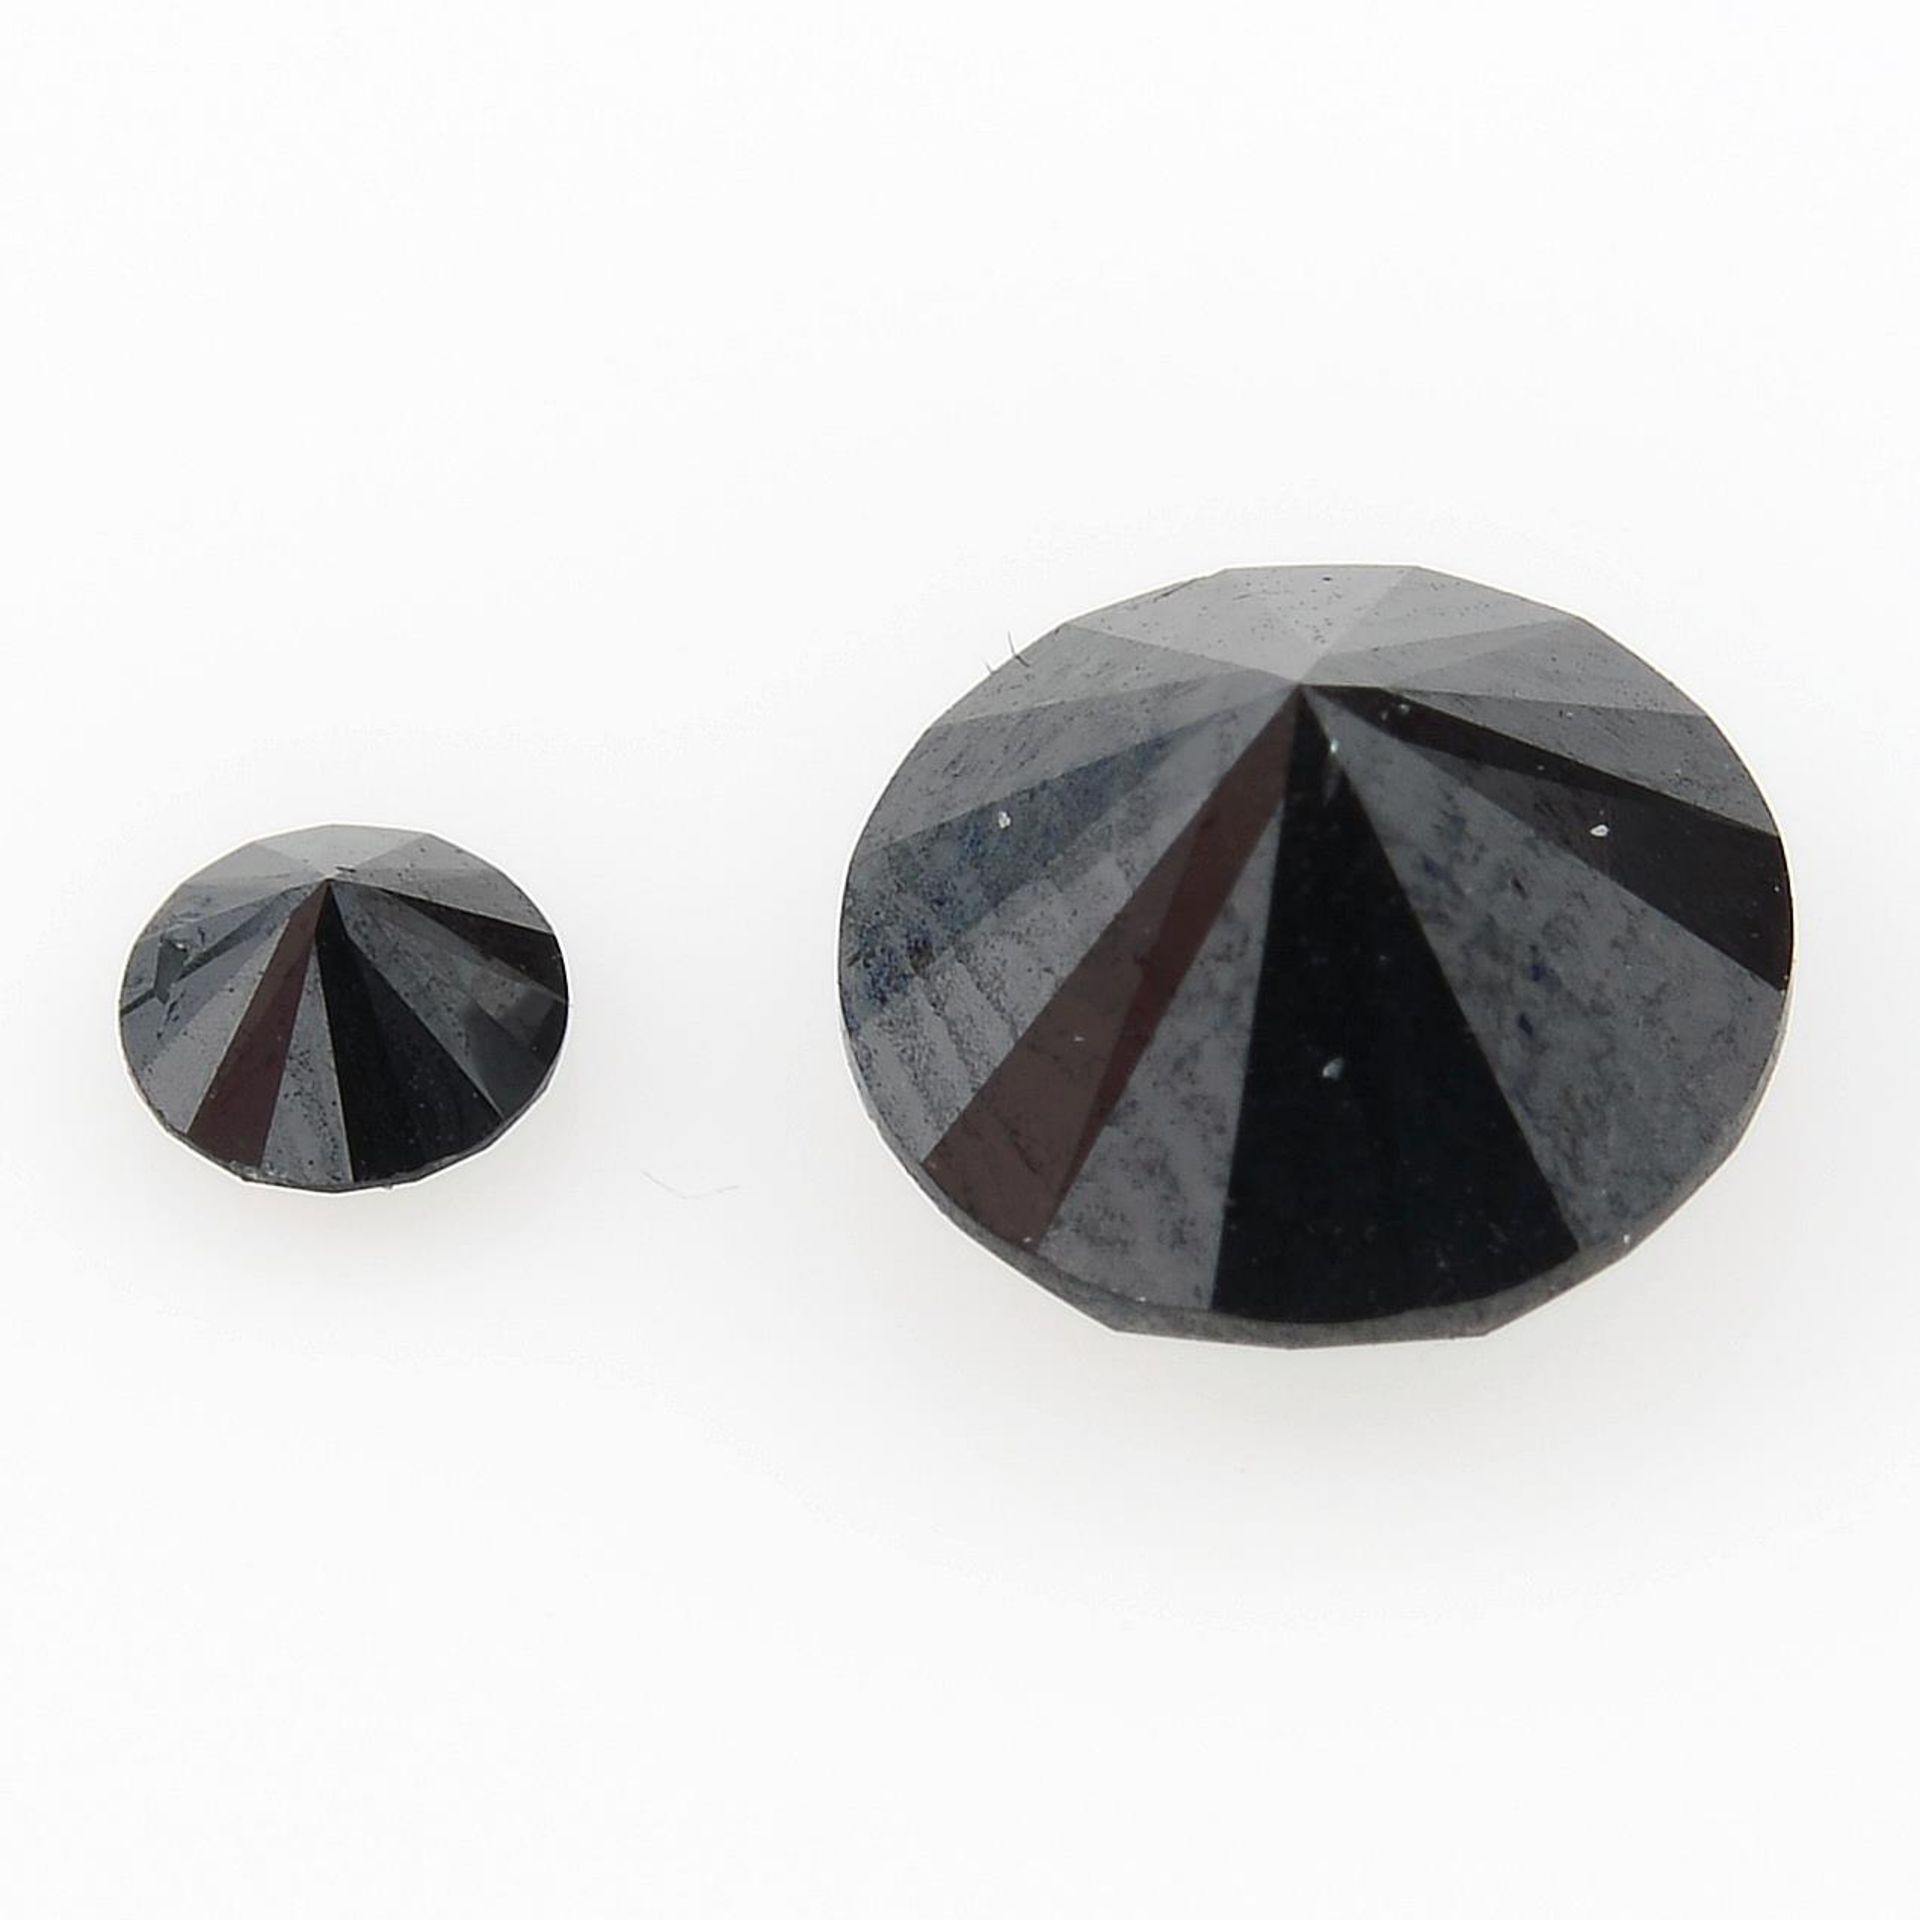 Two black gemstones, weighing 1.23ct. - Image 2 of 2